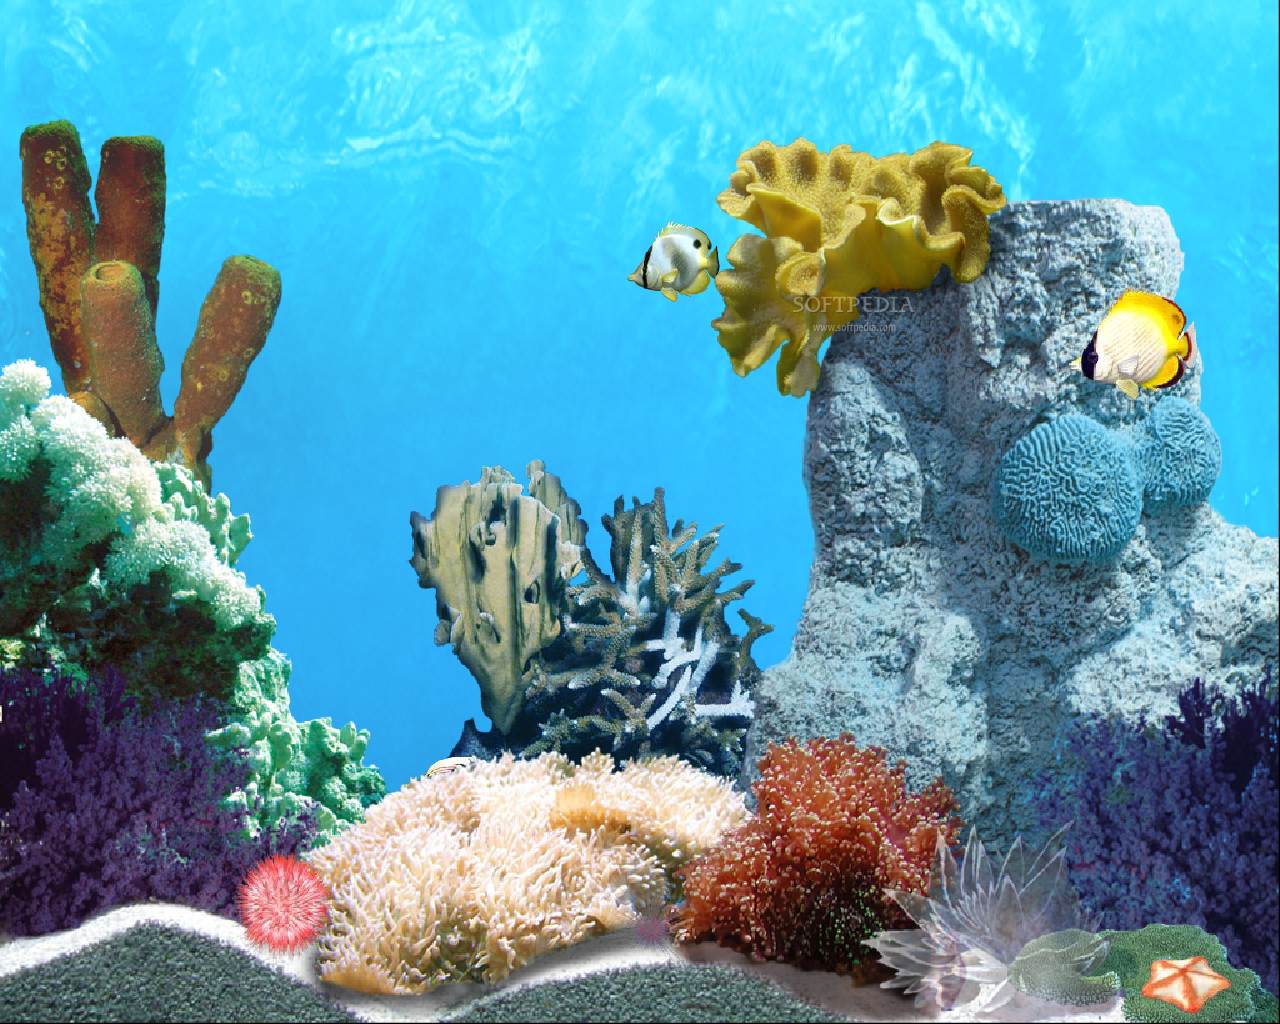 アニメーションの魚の壁紙,サンゴ礁,リーフ,クマノミ,コーラル,石サンゴ